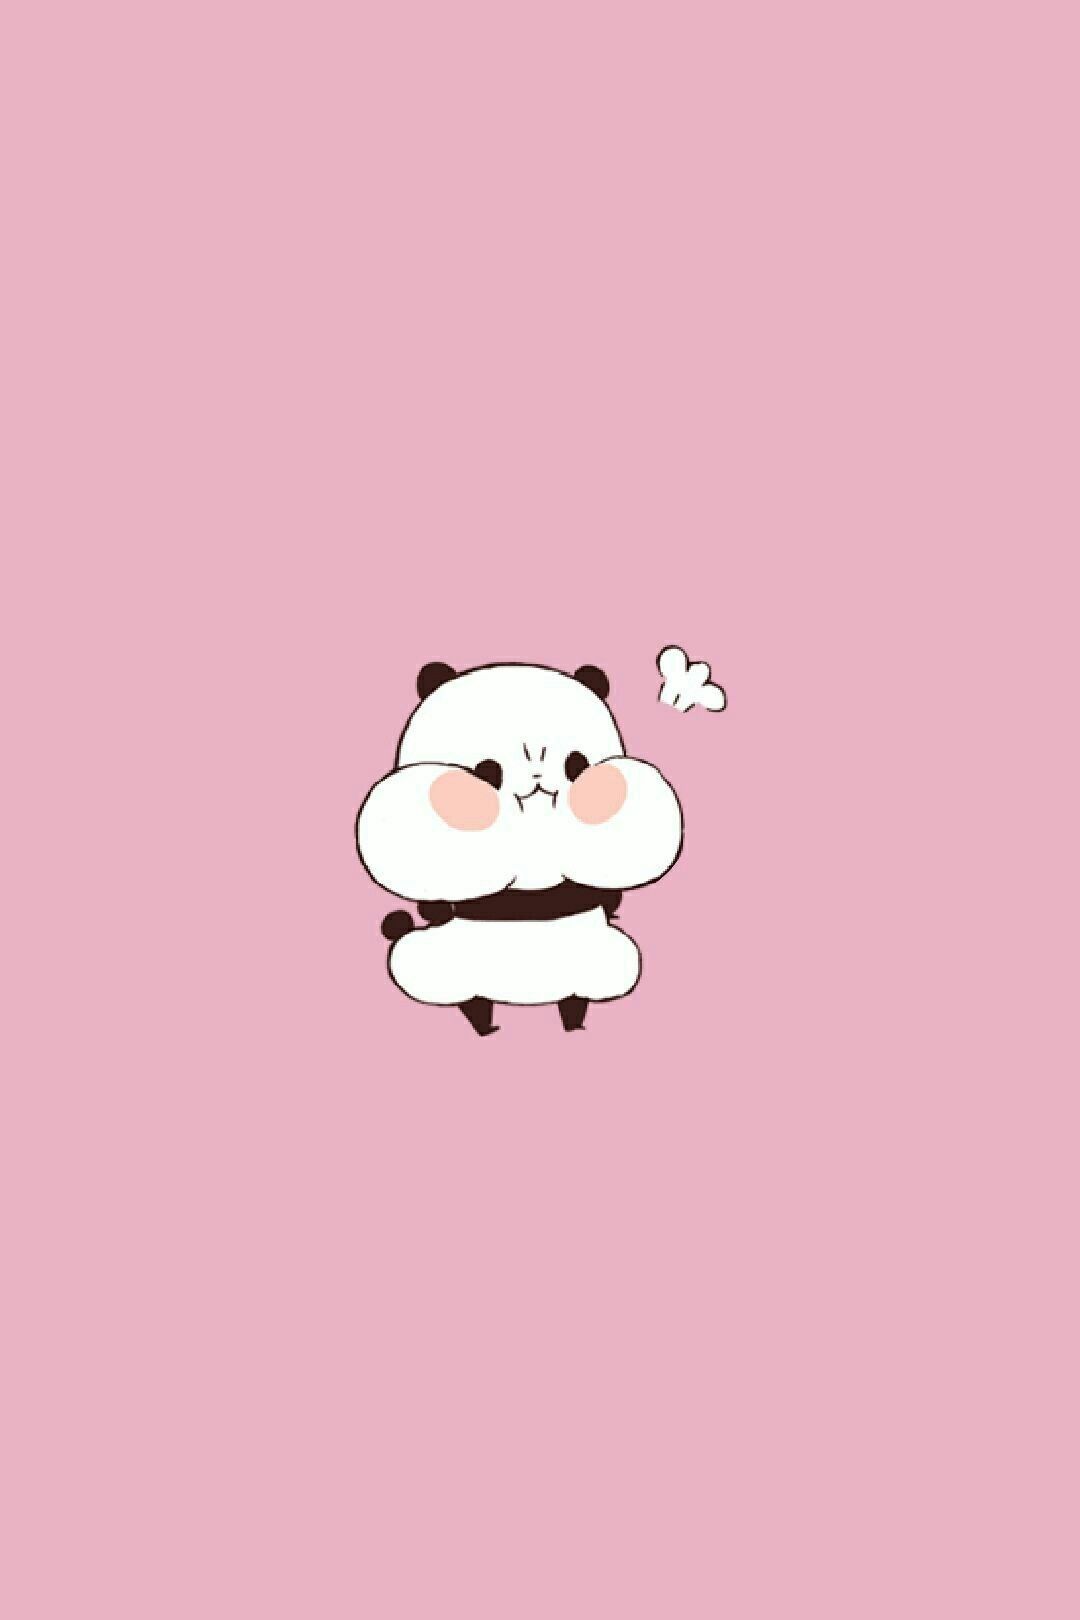 Angry panda. Cute panda wallpaper, Cute cartoon wallpaper, Cute drawings